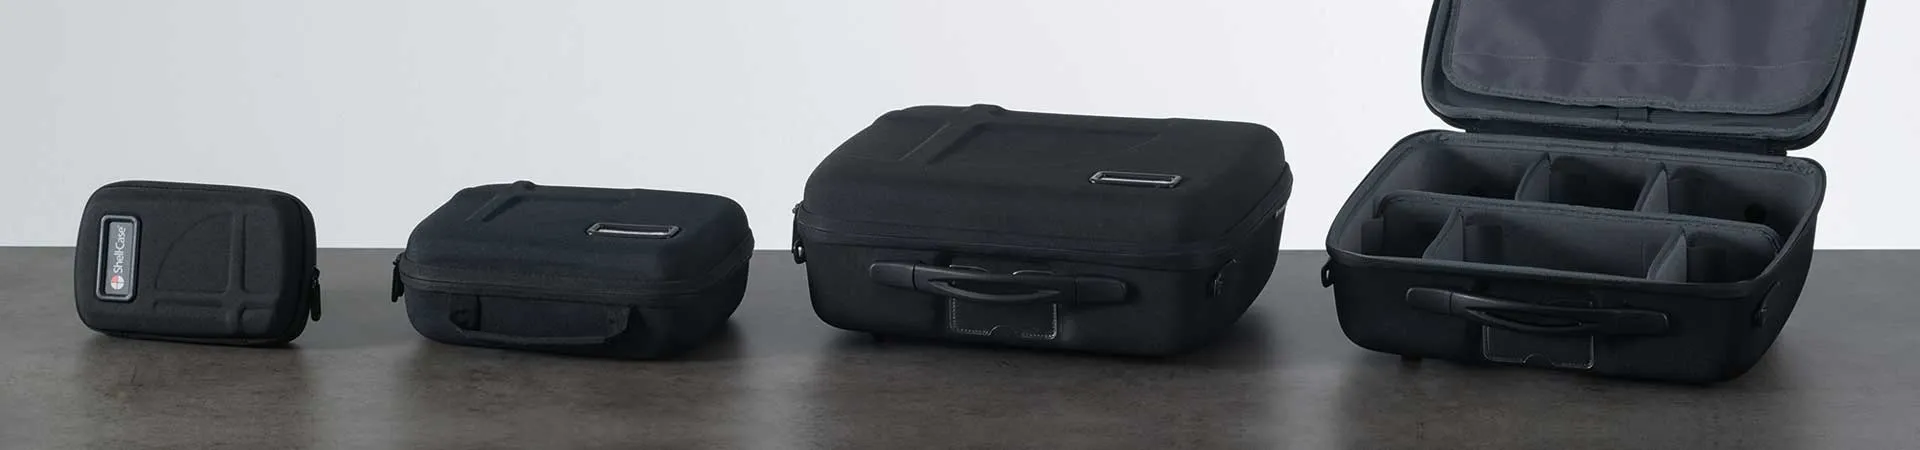 Kunststoffgehäuse Gehäusezubehör Taschen / Koffer